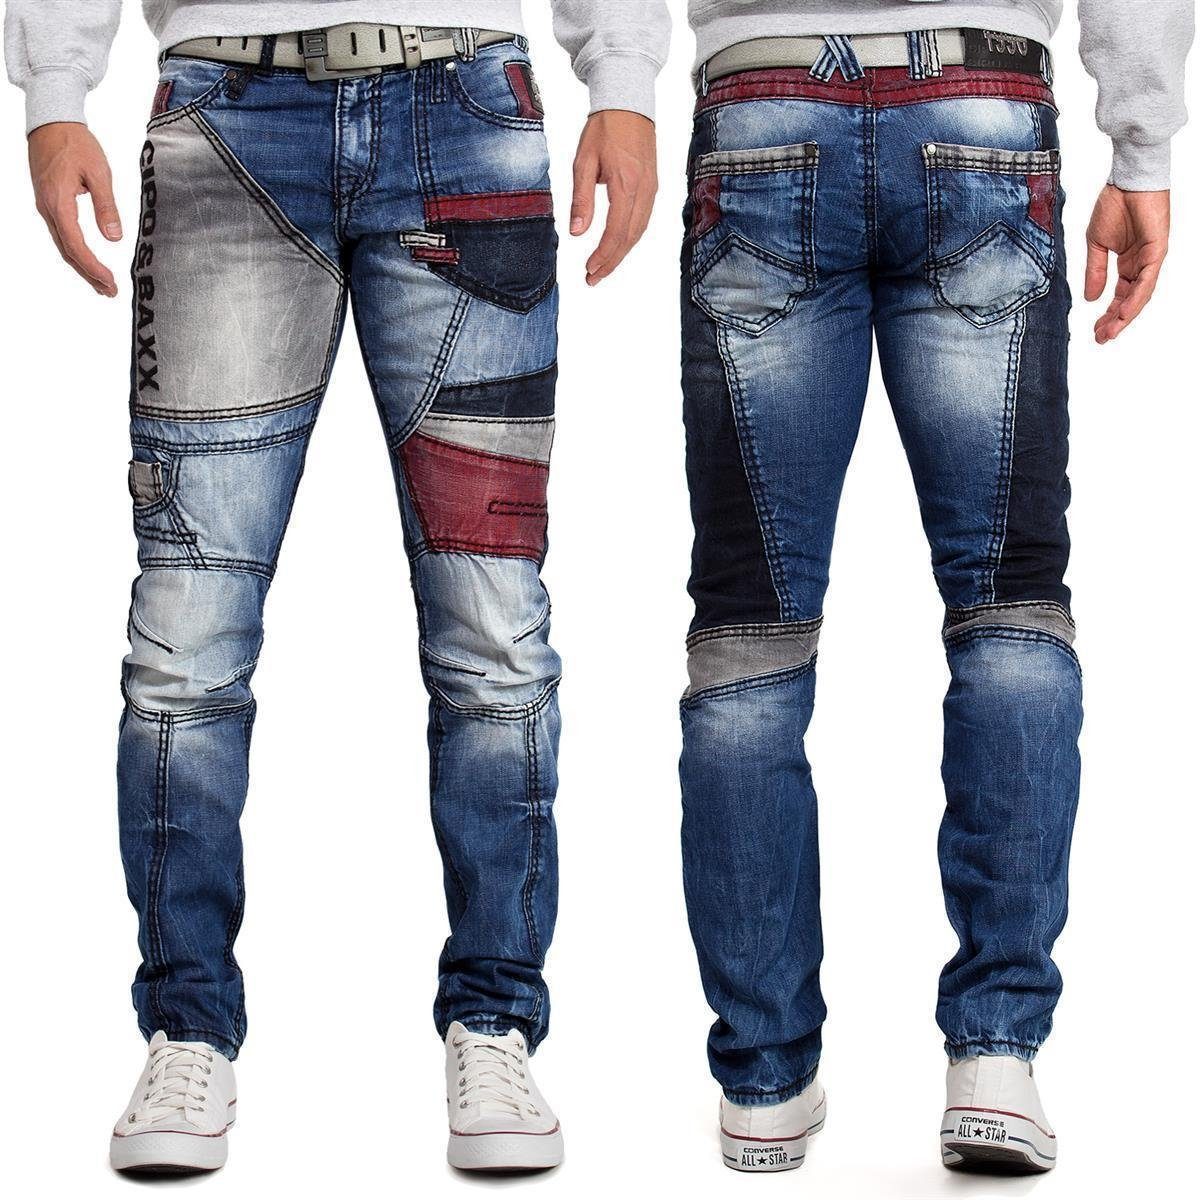 & 5-Pocket-Jeans mit Cipo Bereichen Baxx Biker abgesetzten farblich BA-CD574 Hose